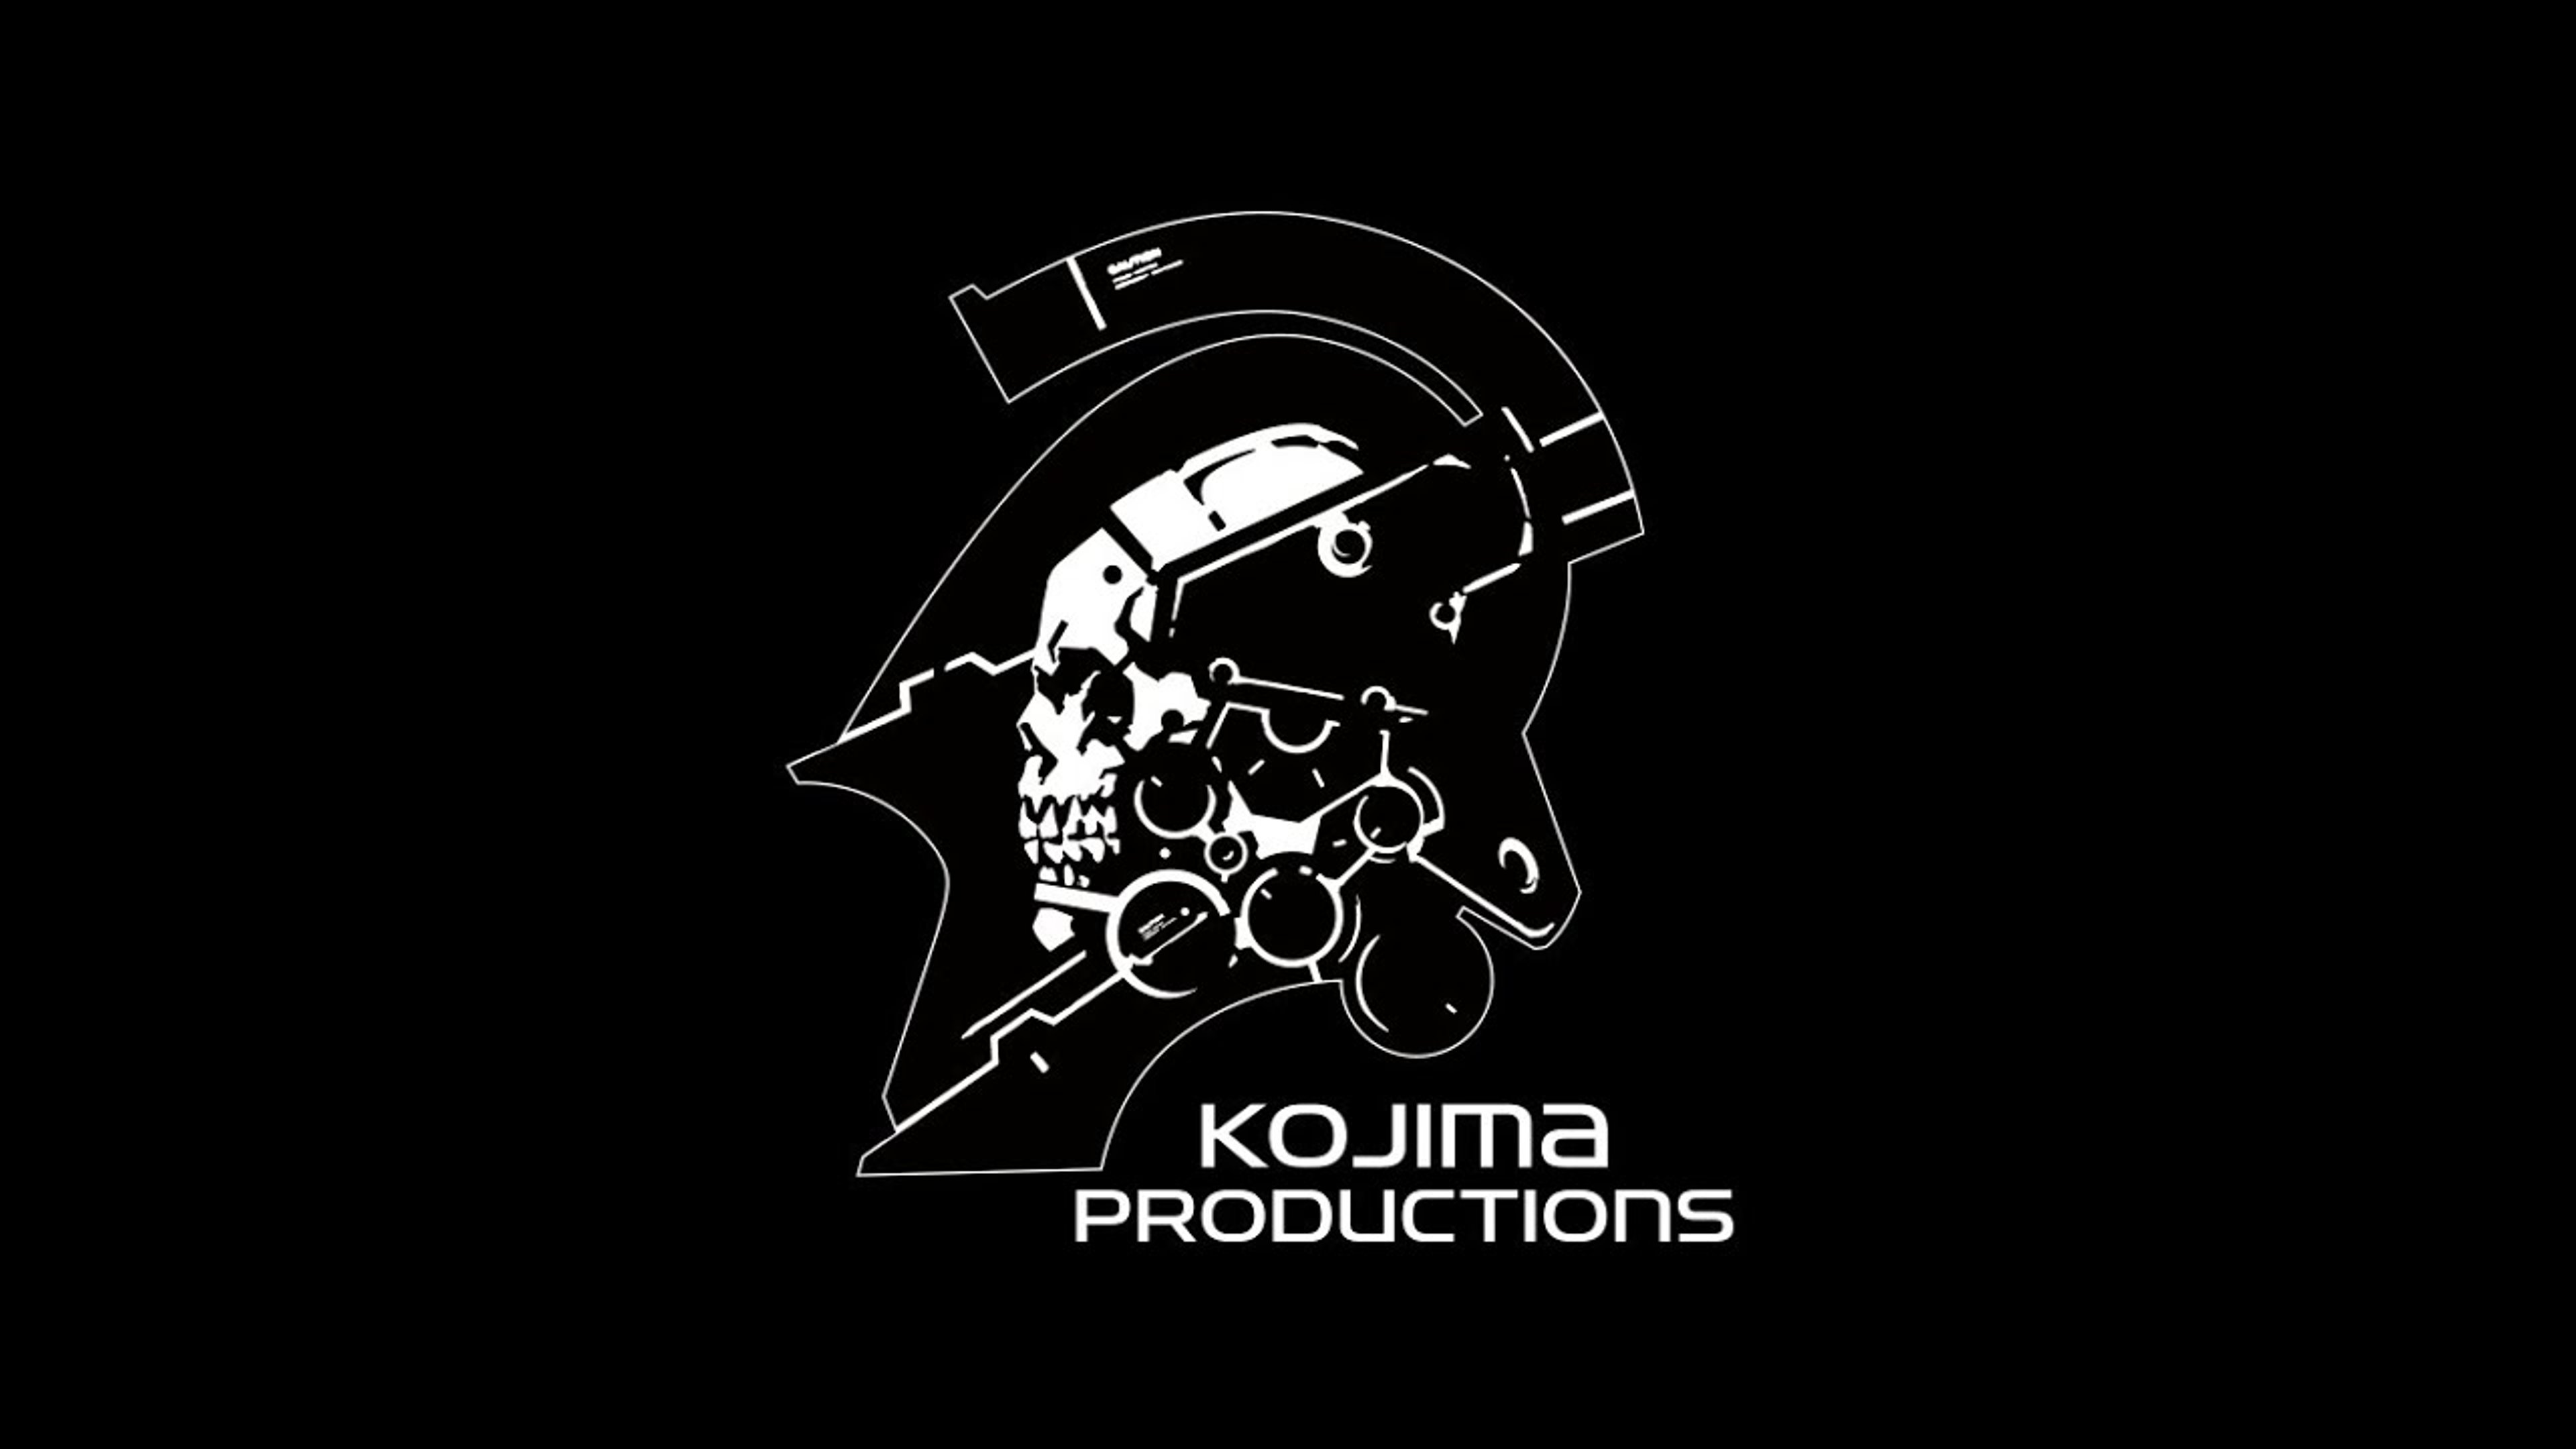 Hideo Kojima annuncia un NUOVO PROGETTO: ecco i suoi 3 migliori lavori.